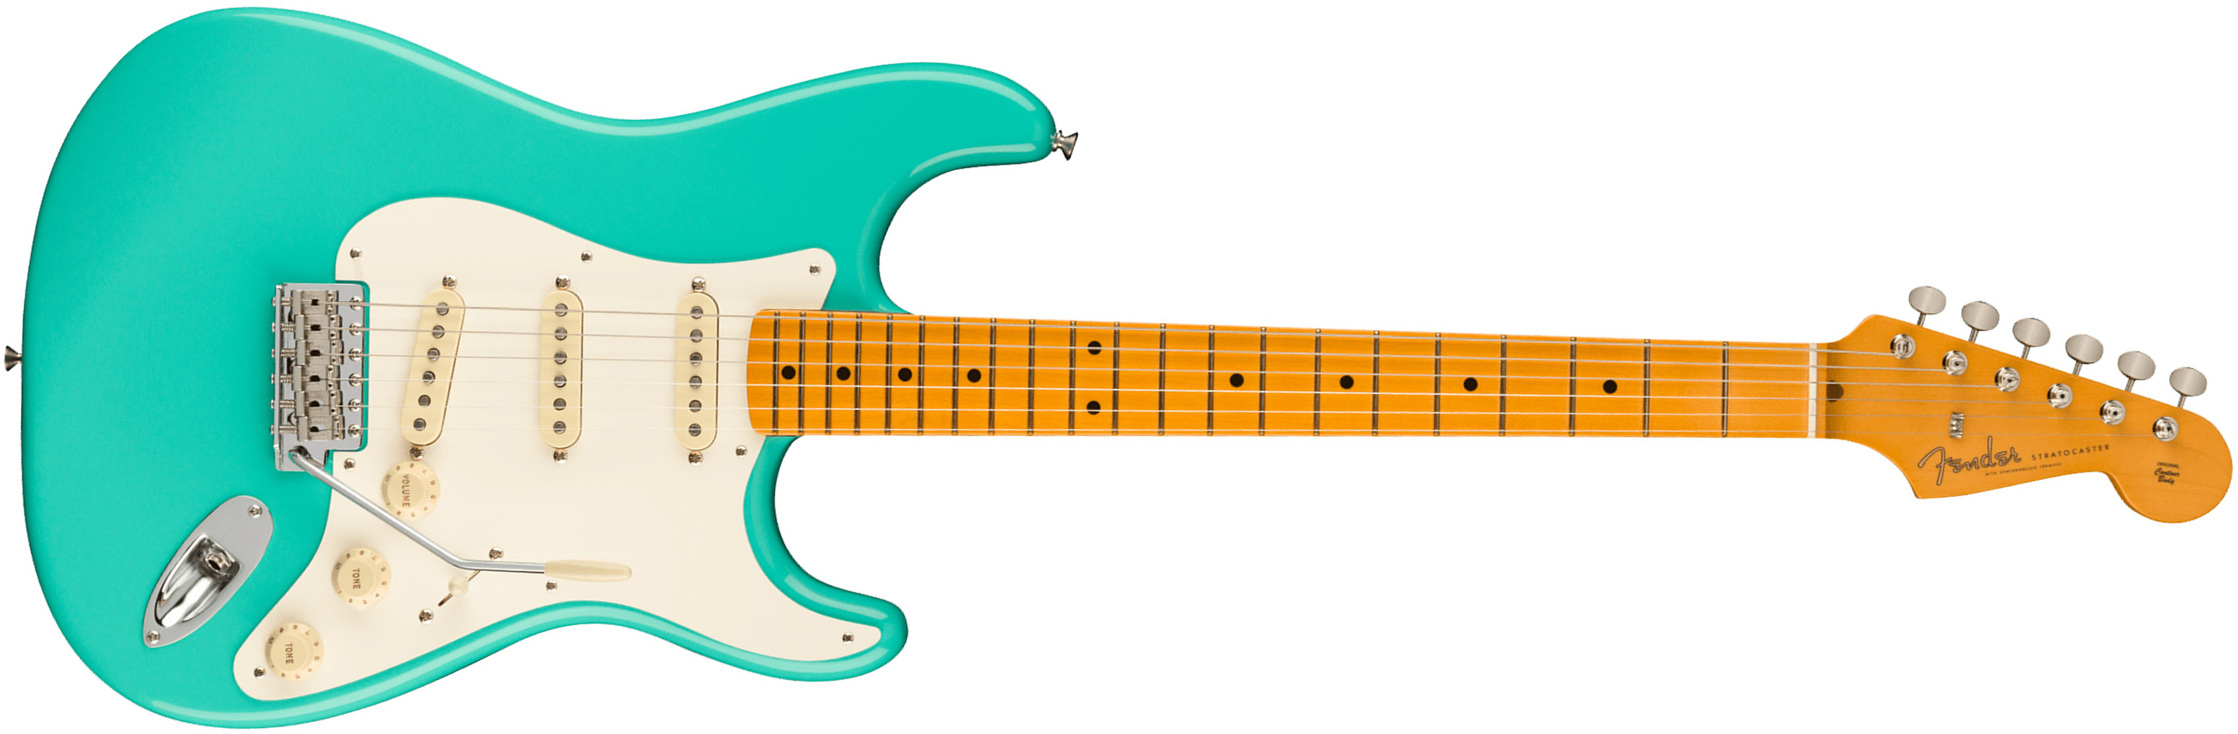 Fender Strat 1957 American Vintage Ii Usa 3s Trem Mn - Sea Foam Green - E-Gitarre in Str-Form - Main picture